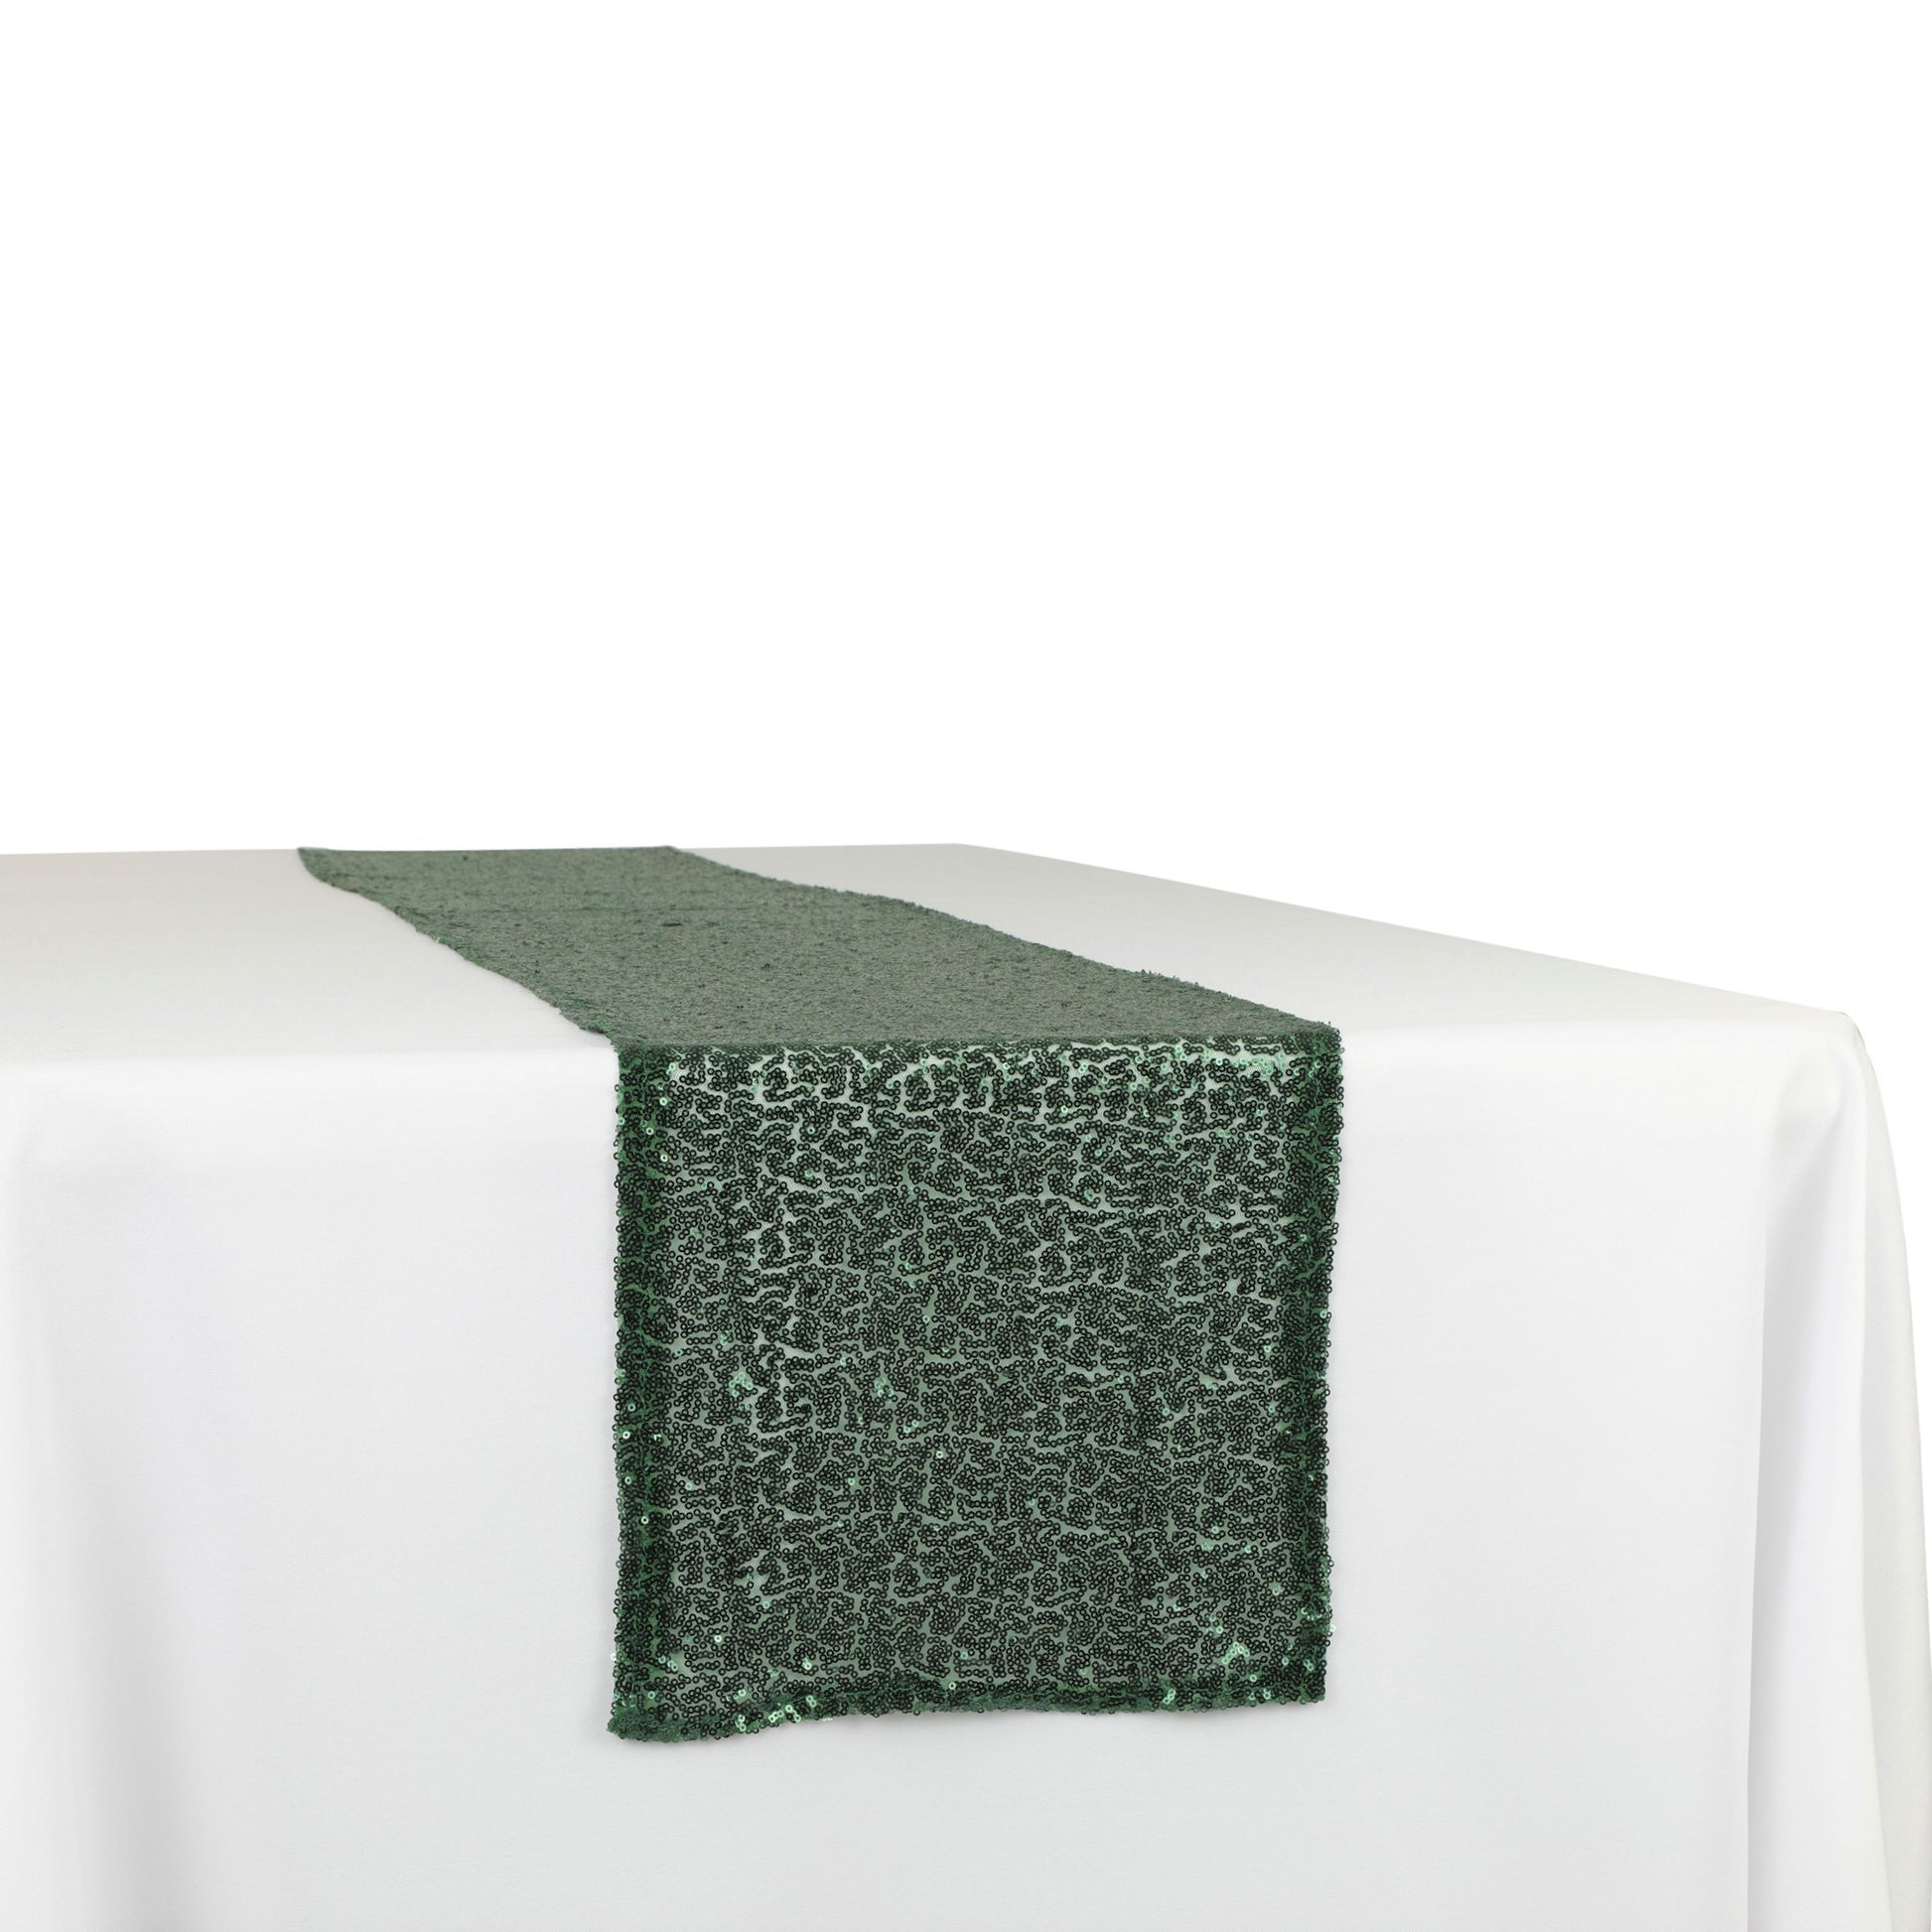 Glitz Sequin Mesh Net Table Runner 12"x108" - Emerald Green